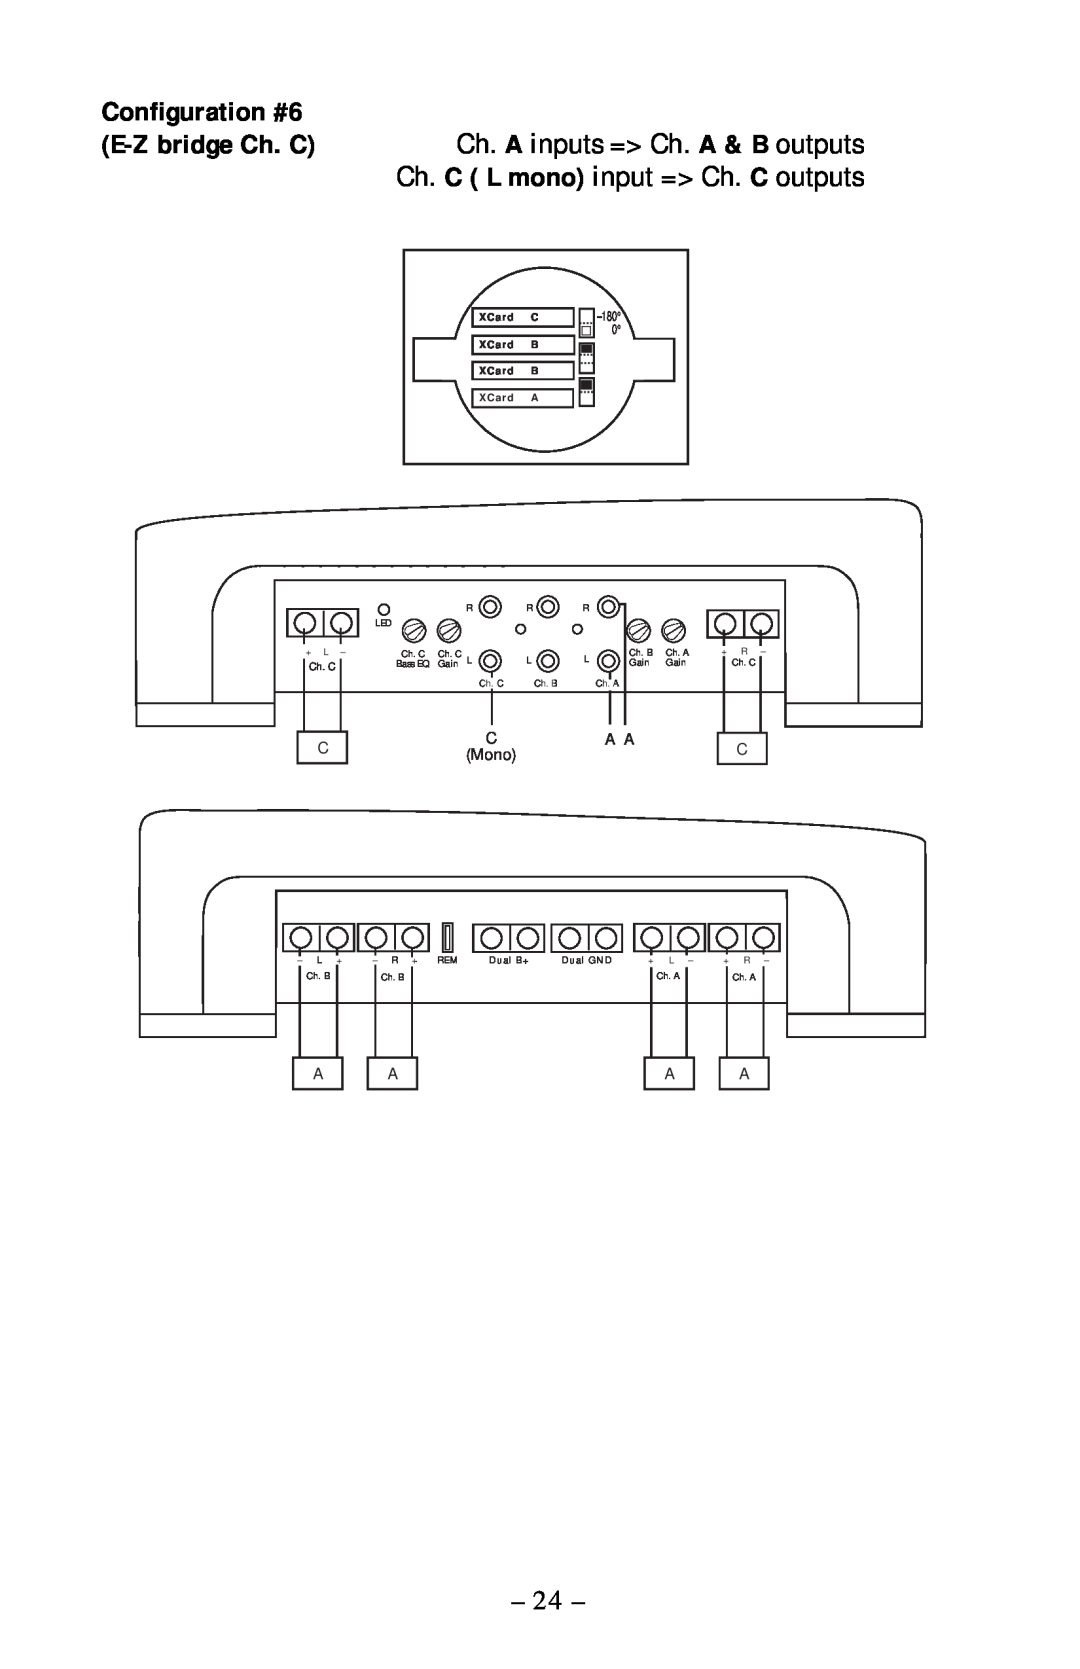 Rockford Fosgate 360.6 manual Configuration #6, CA A Mono 